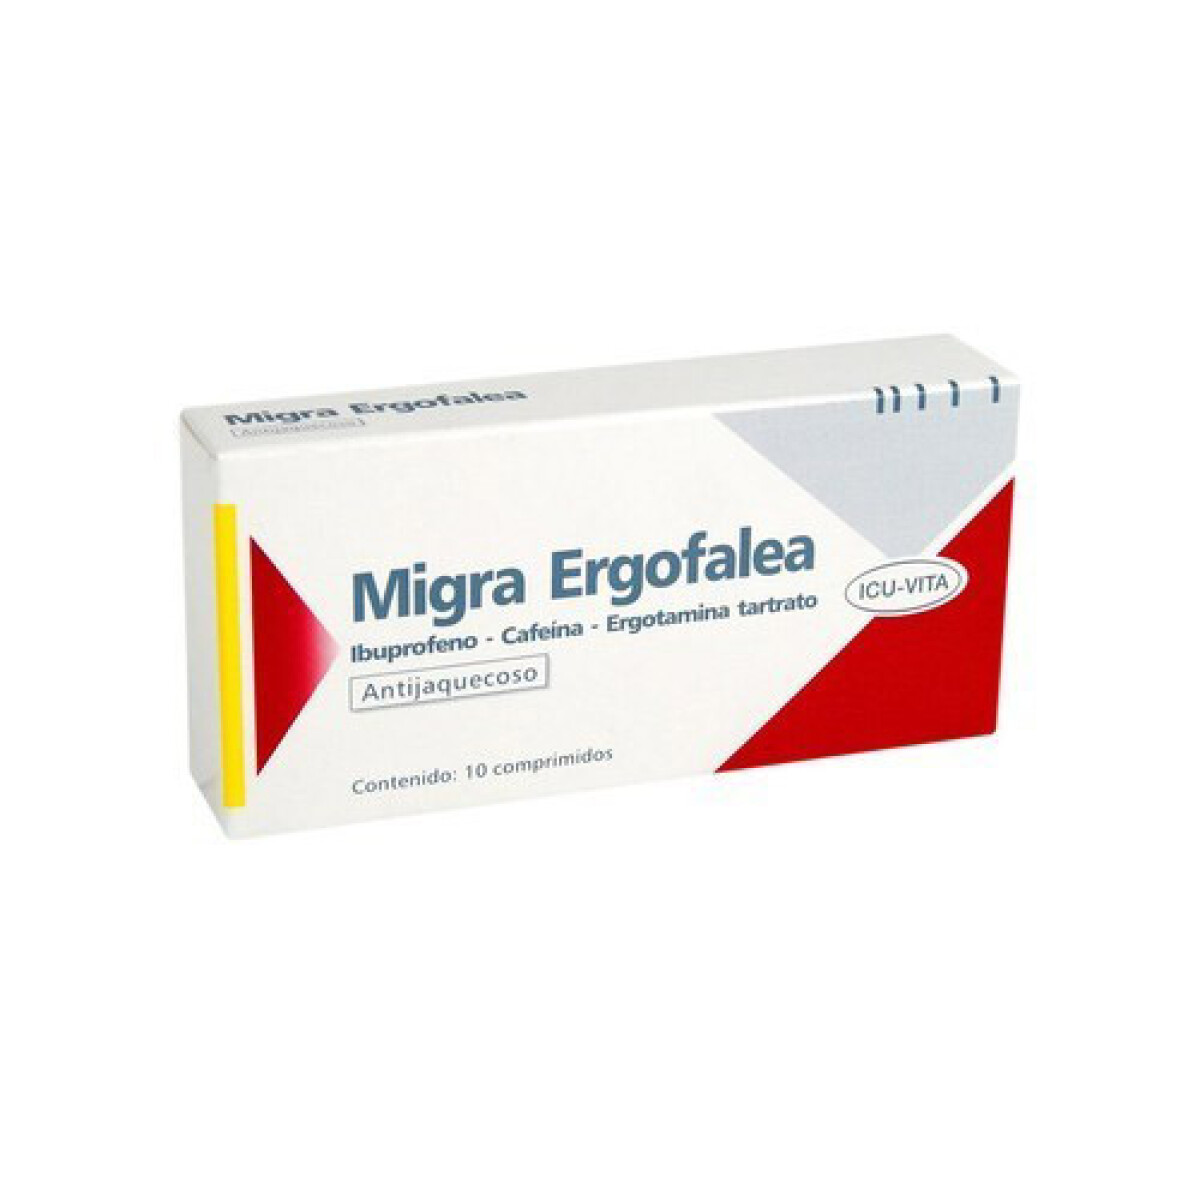 Migra Ergofalea x 10 COM 